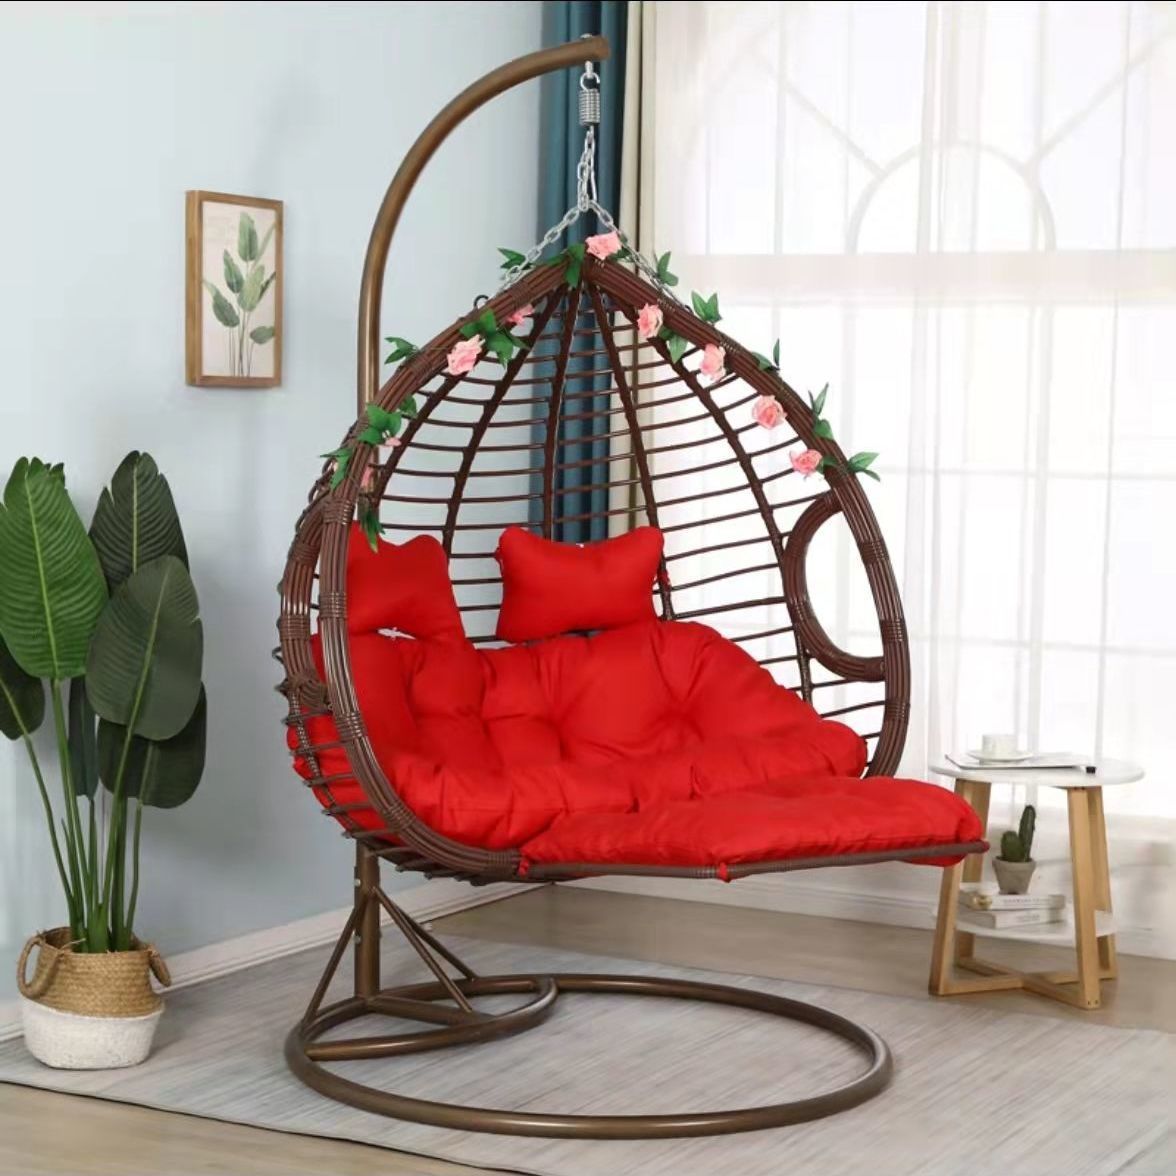 Indoor Outdoor Hammock Chair swing with Footrest